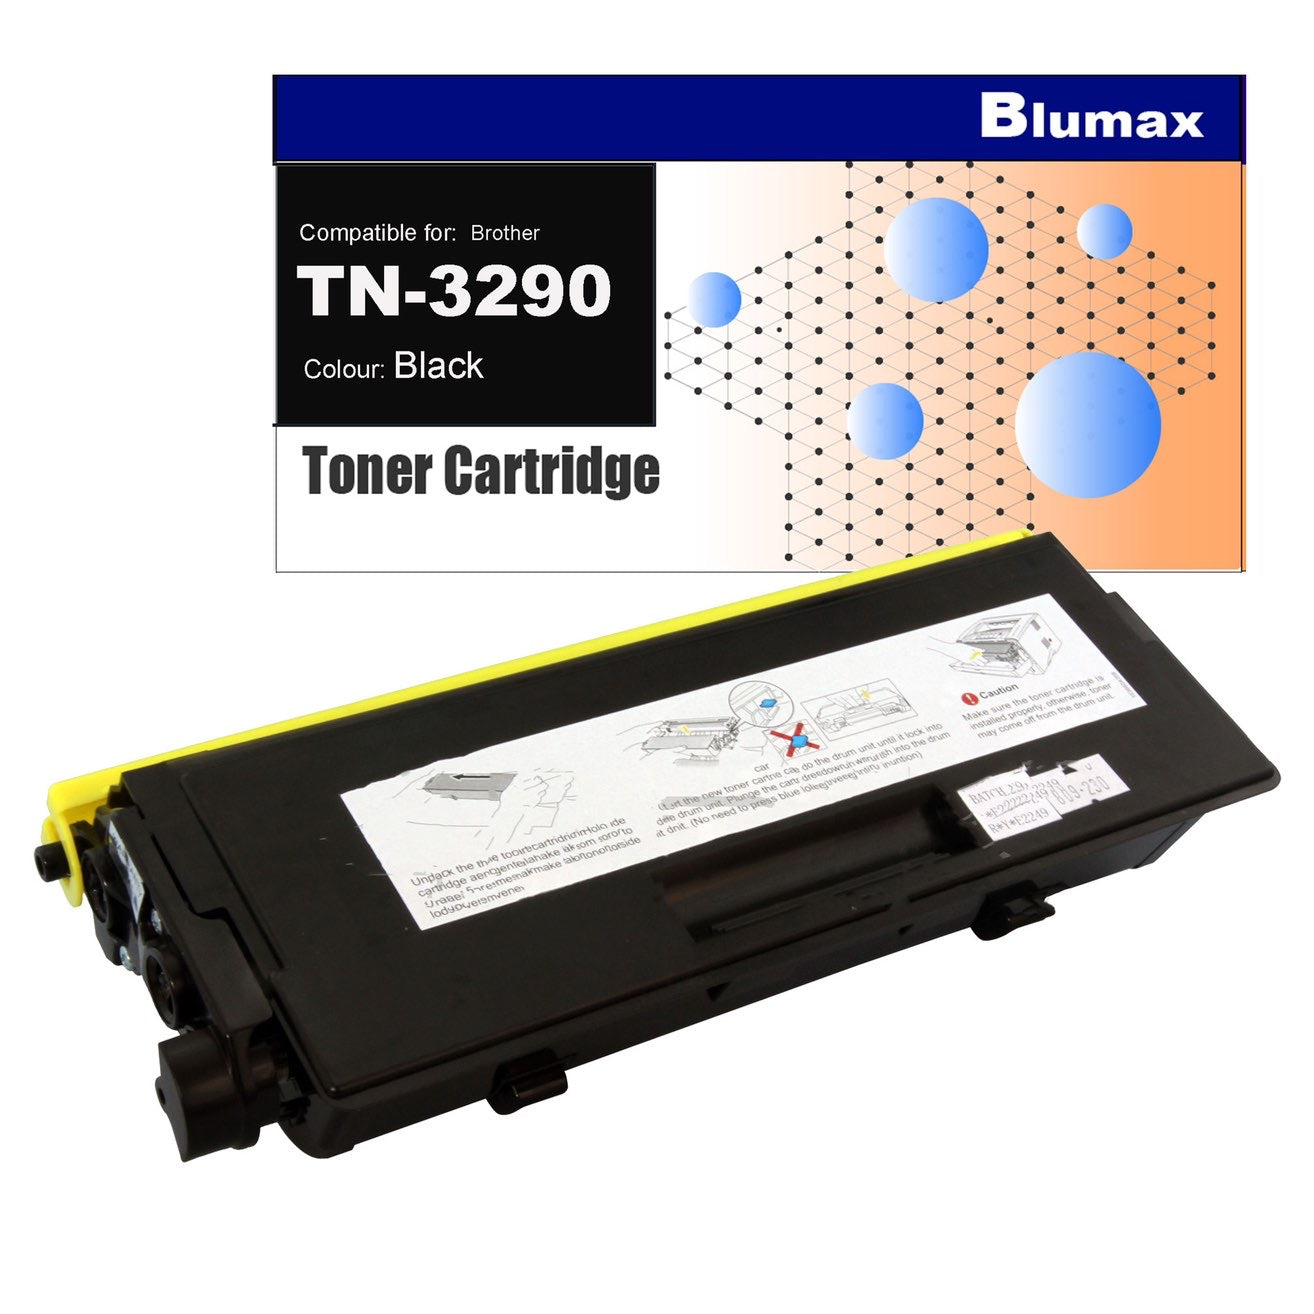 Blumax Compatible Toner for Brother TN-3290 Black Toner Cartridges